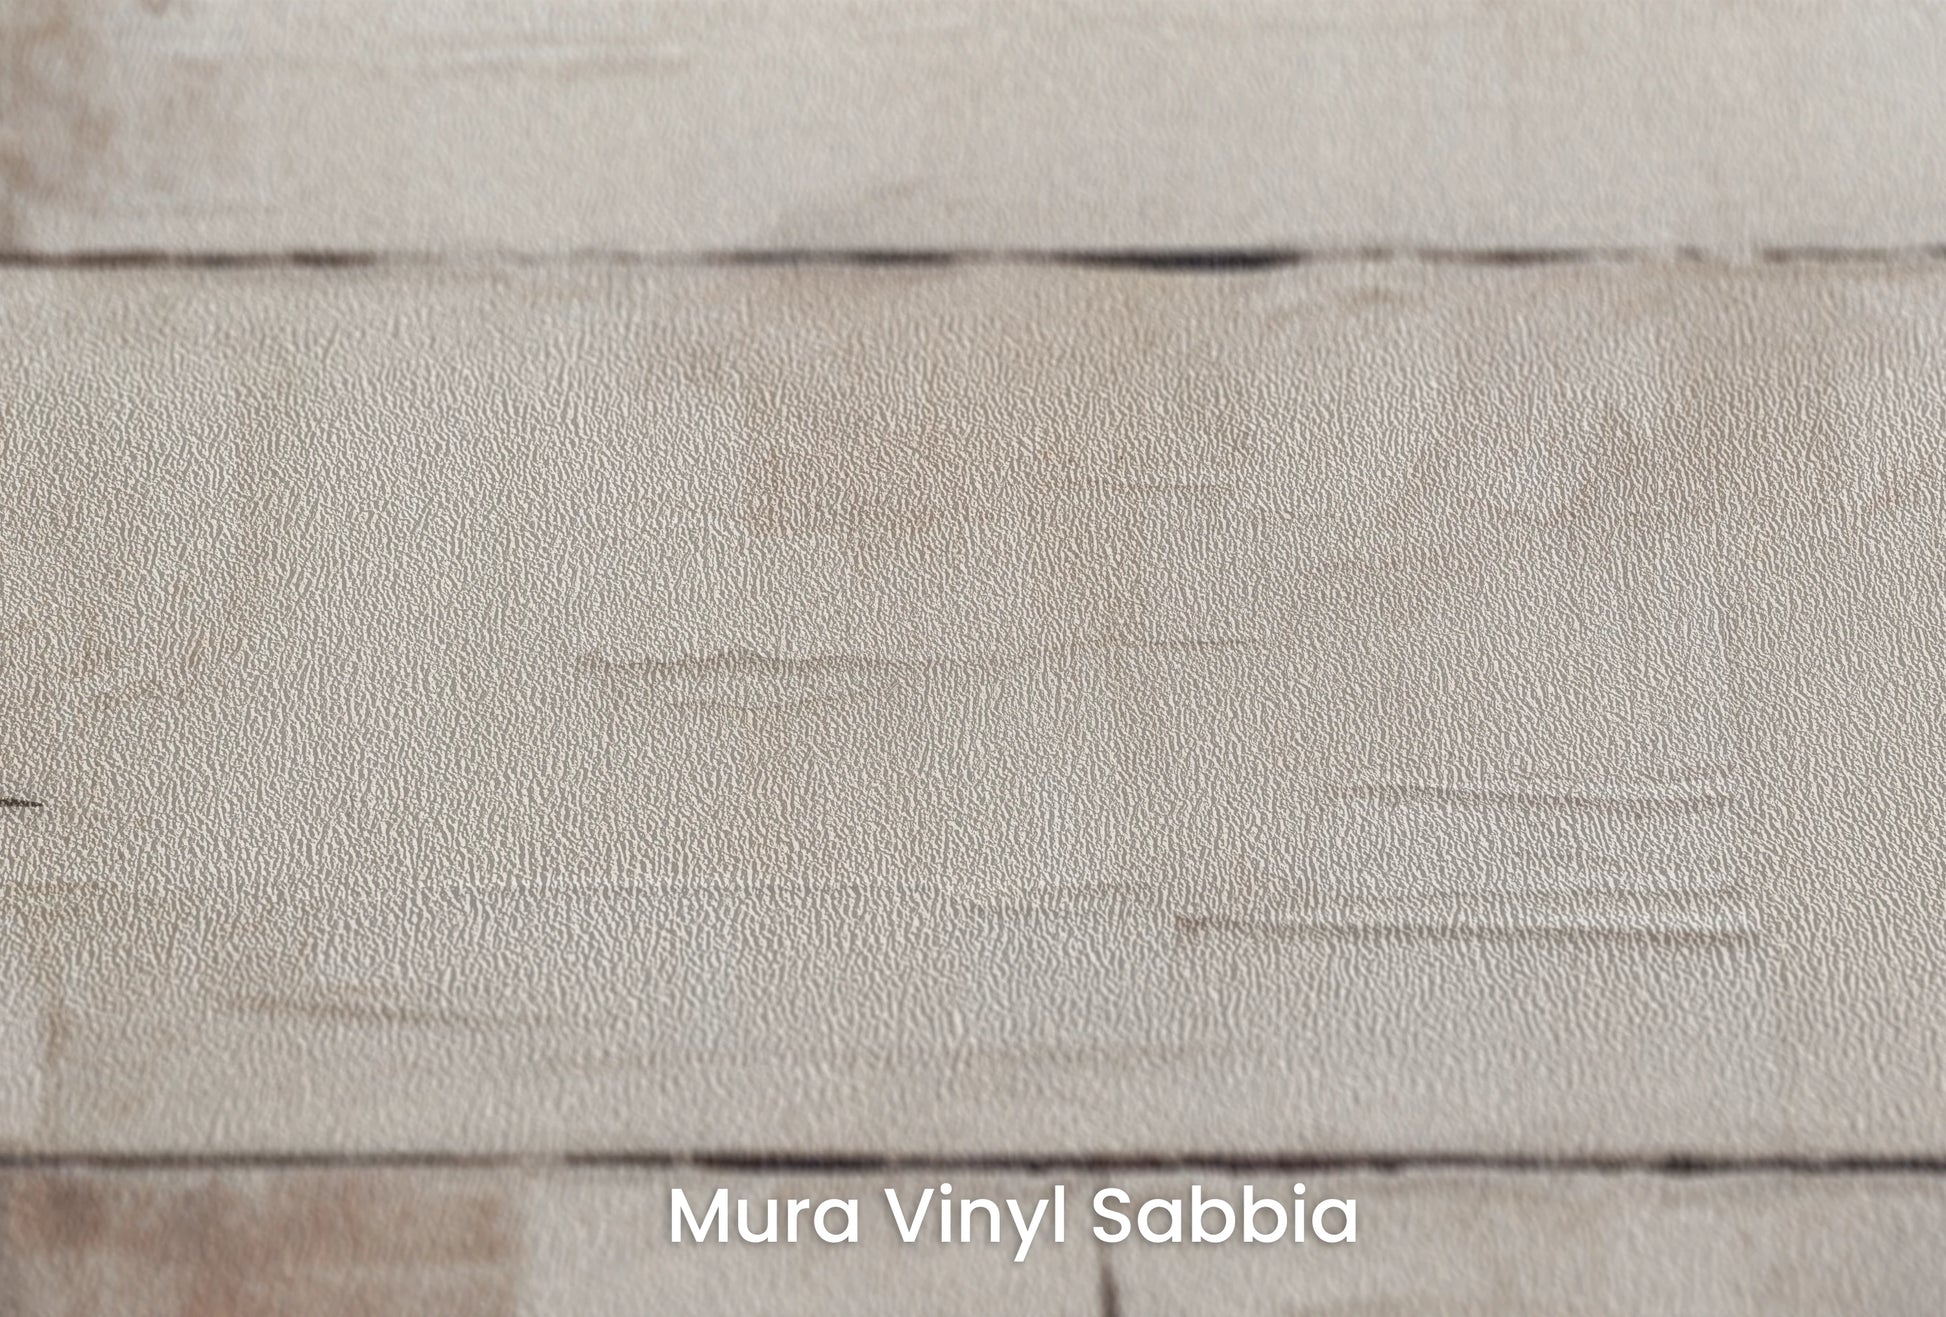 Zbliżenie na artystyczną fototapetę o nazwie Burnt Sienna Harmony na podłożu Mura Vinyl Sabbia struktura grubego ziarna piasku.